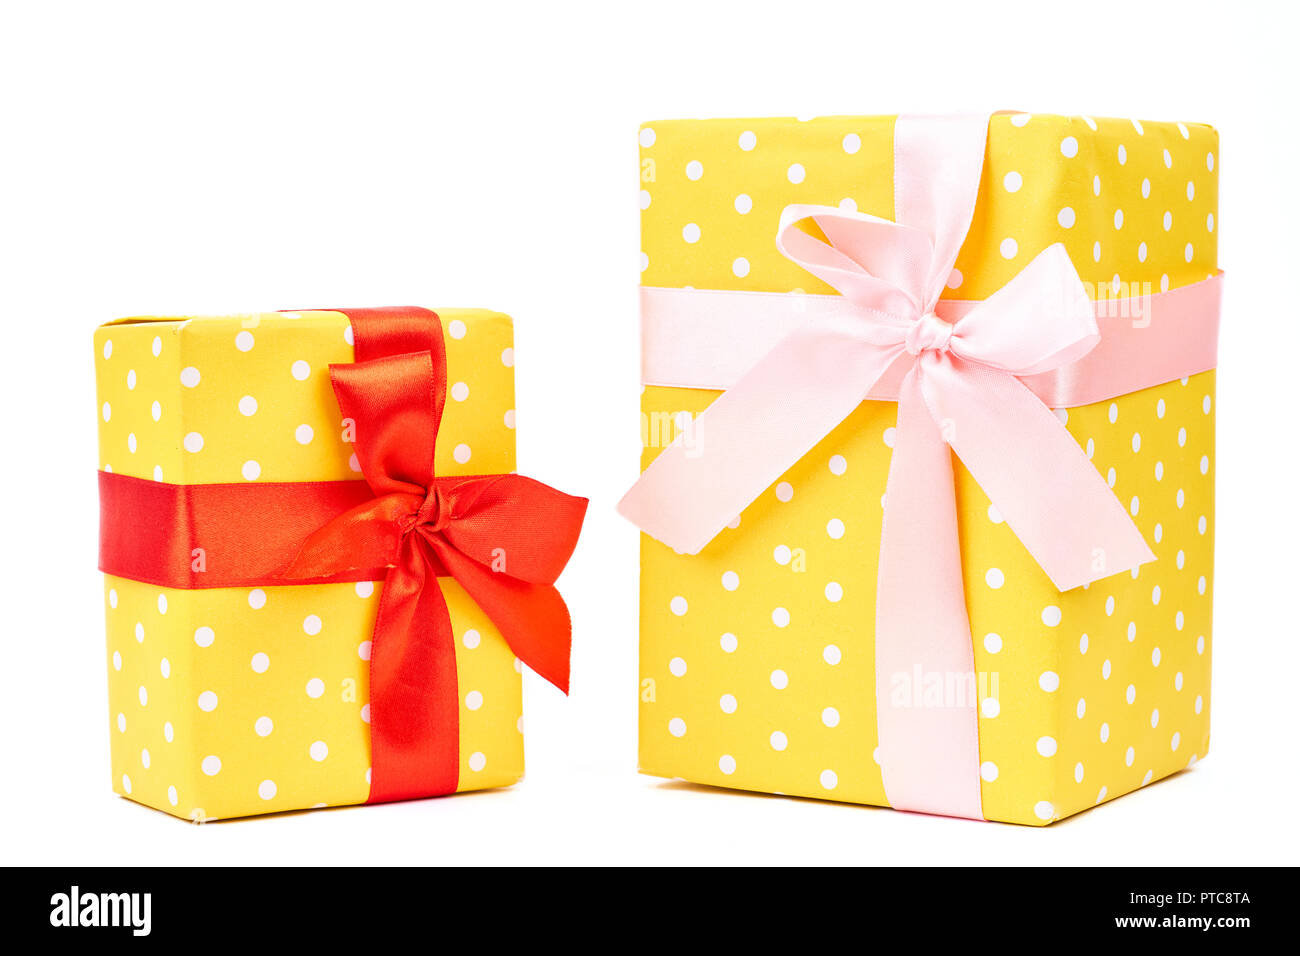 Cadeaux en pointillés jaune, fond blanc. Enveloppé dans du papier de soie à pois jaune et attachés à un ruban de satin. Paniers-cadeaux de Noël magnifiquement. Banque D'Images